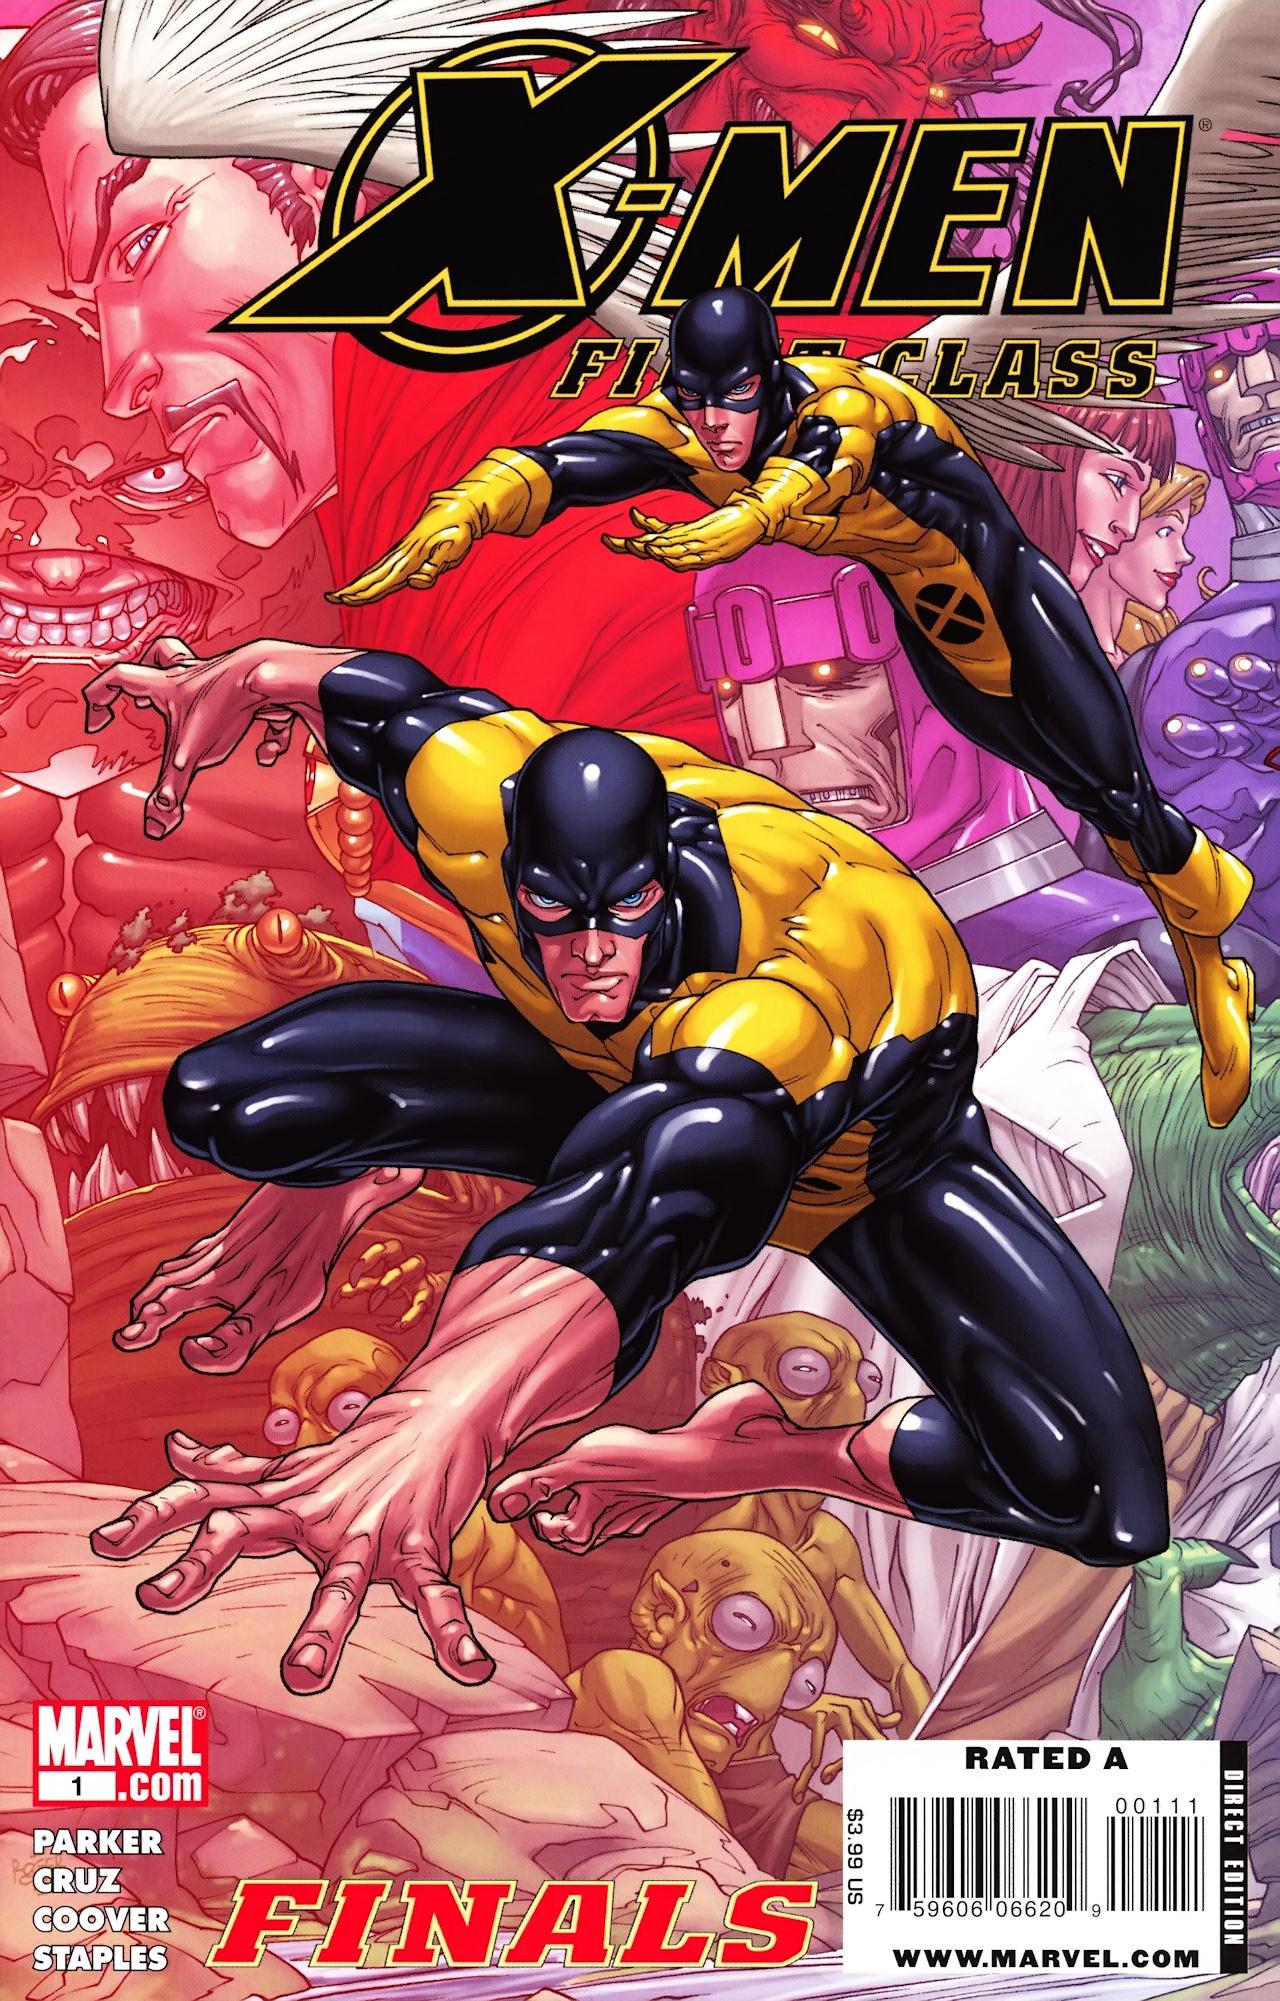 X-Men: First Class Finals Vol. 1 #1